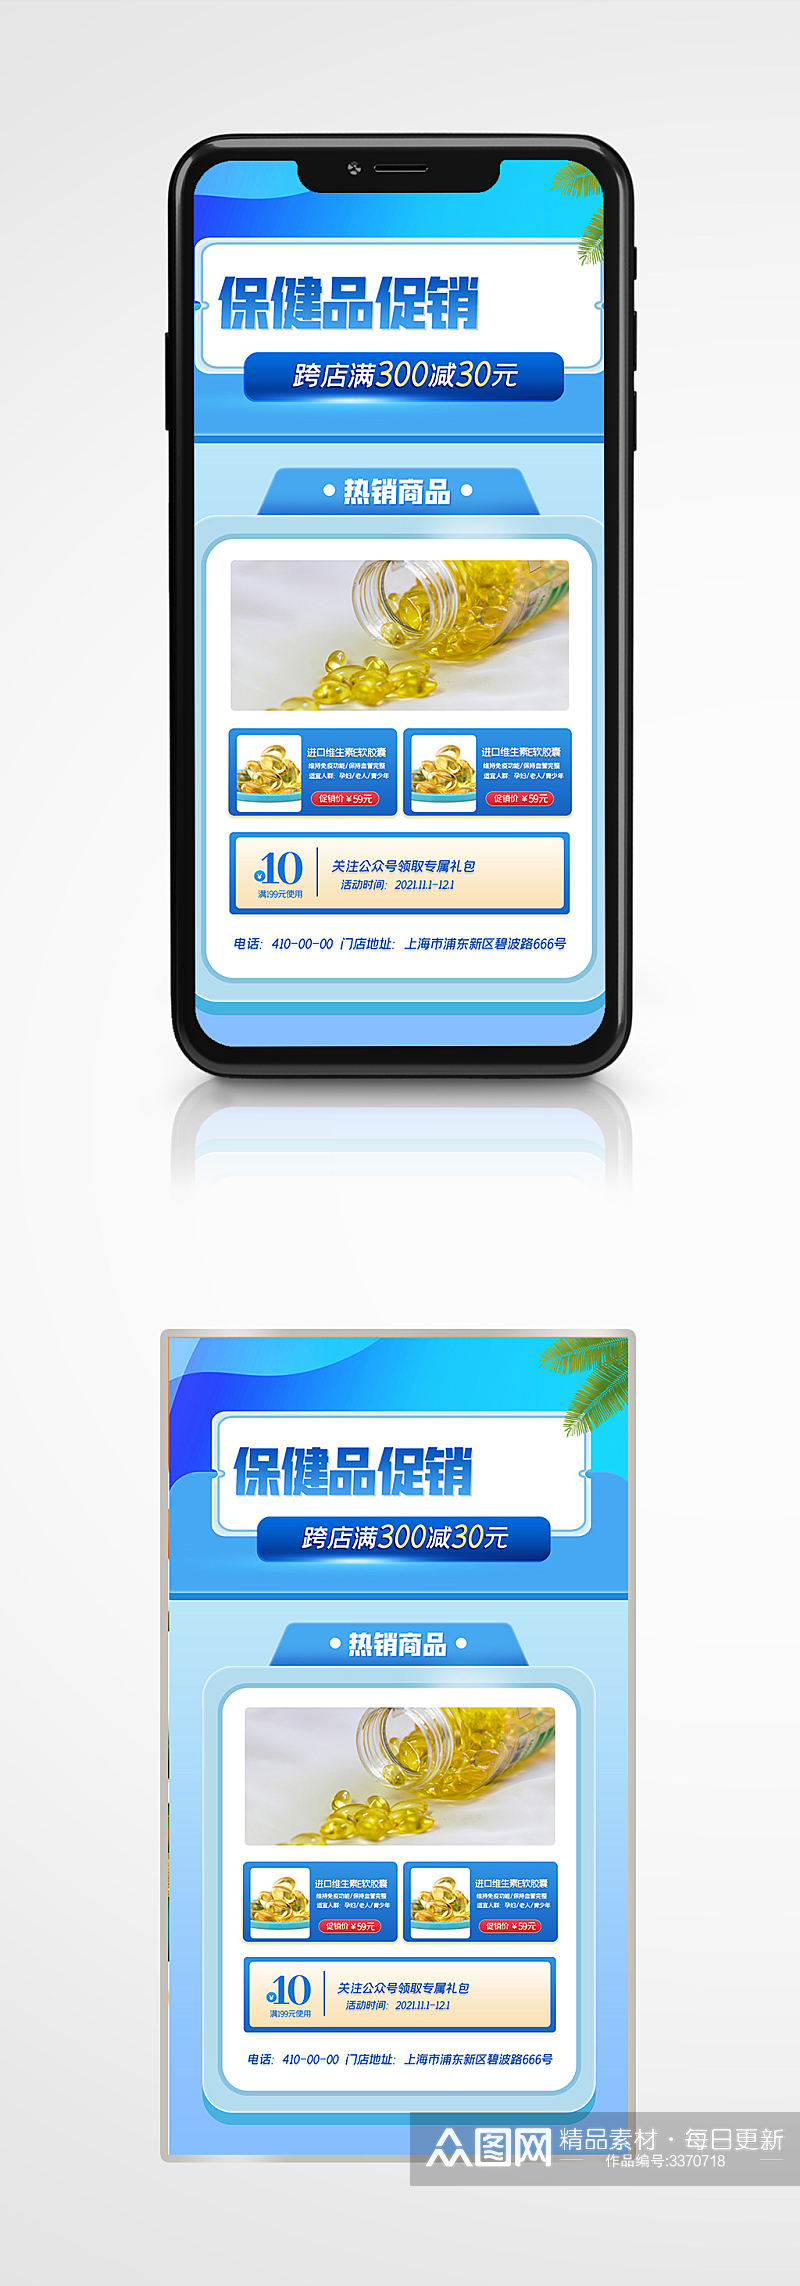 双十一医疗保健品促销手机海报蓝色养生素材